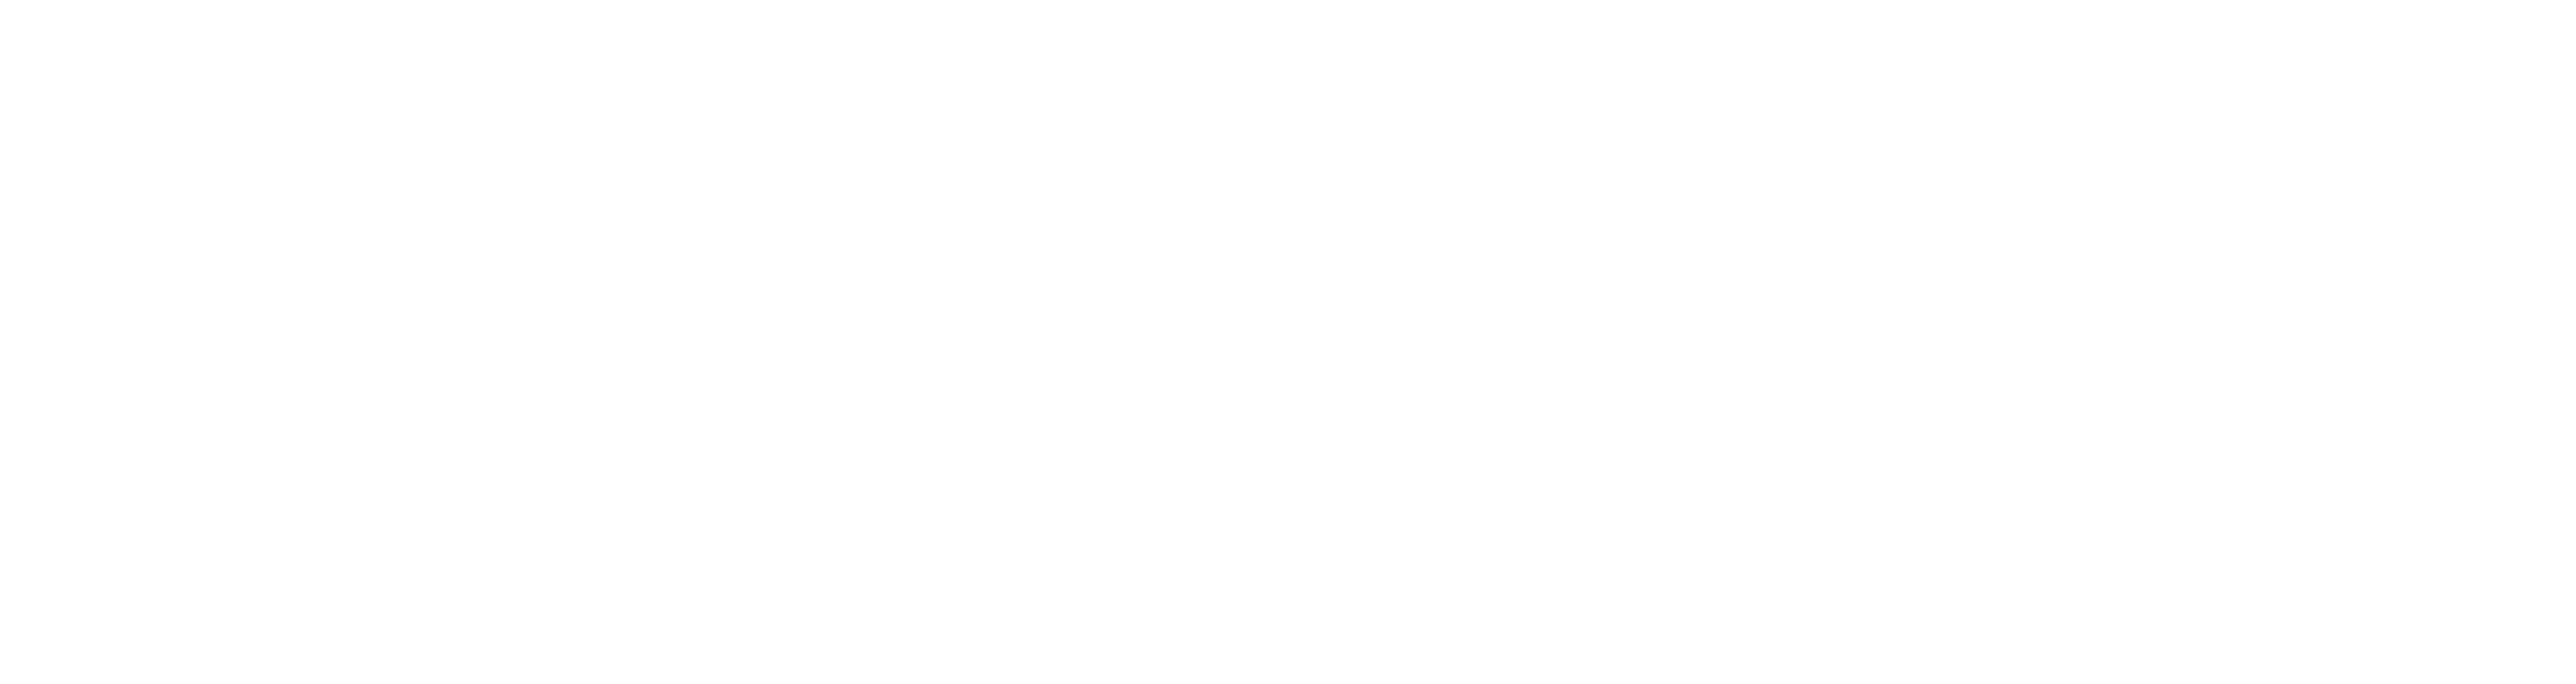 Logotipo Teatro Ortega blanco